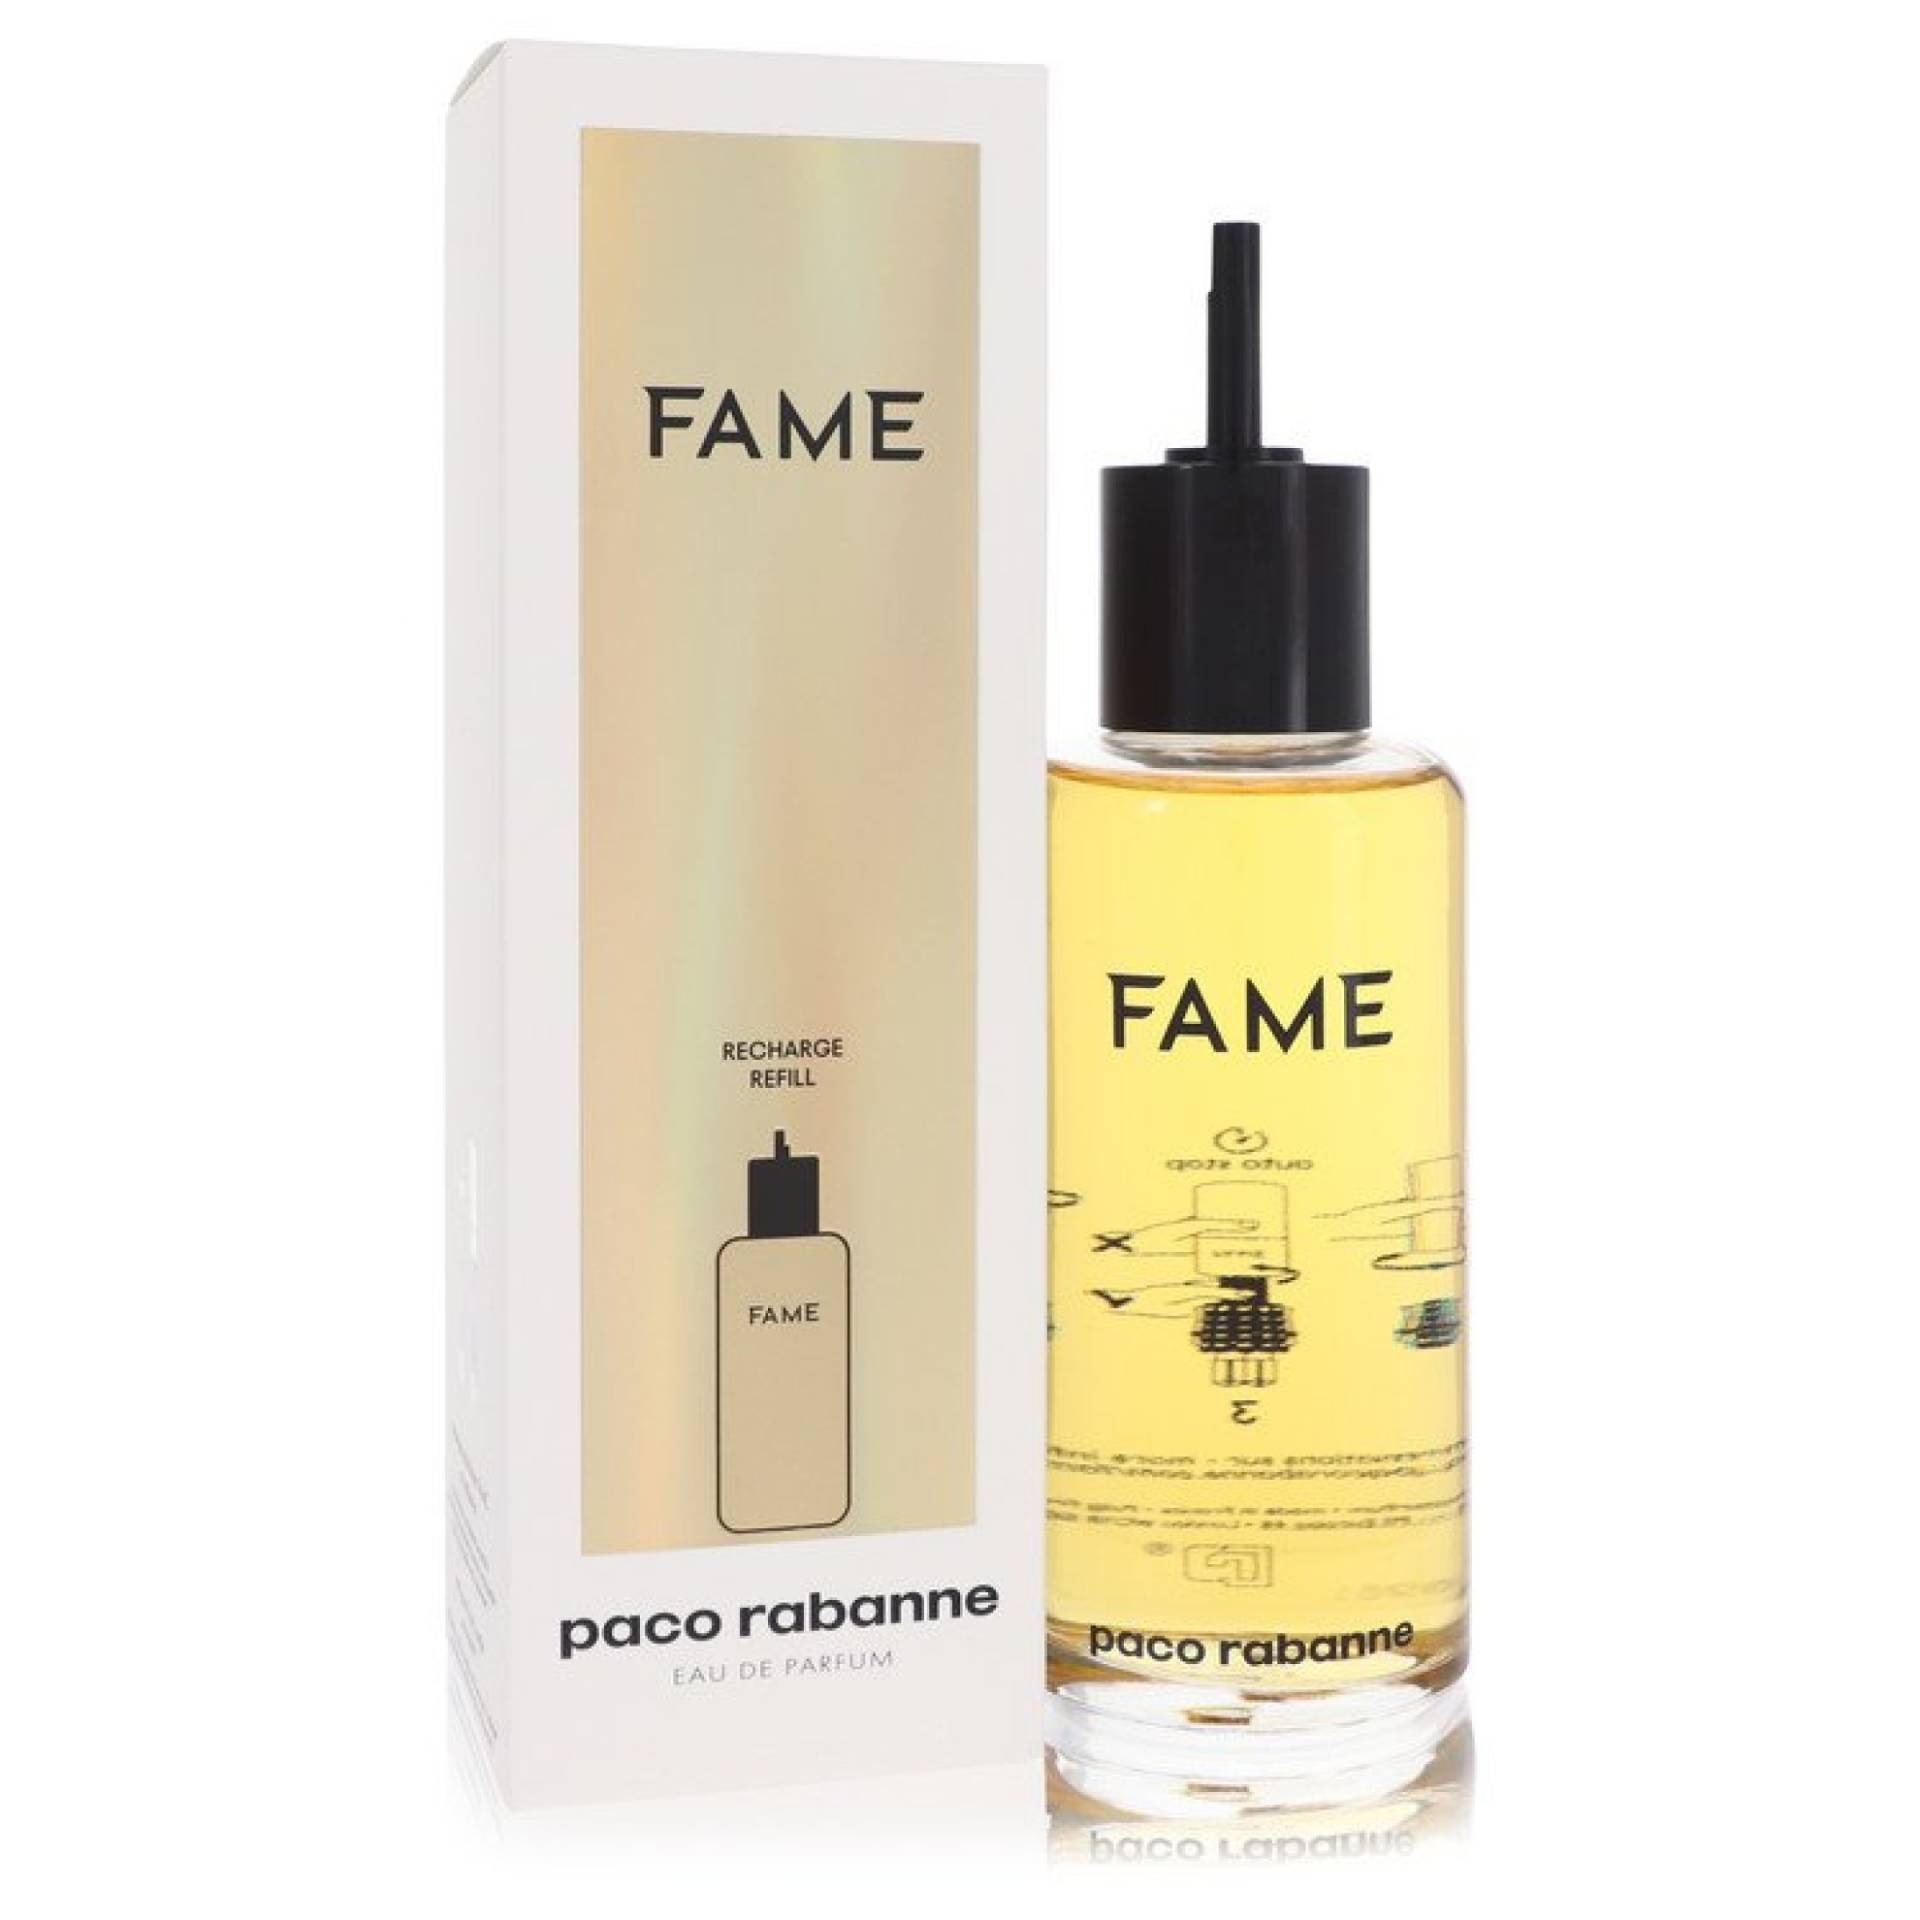 Paco Rabanne Fame Eau De Parfum Refill 201 ml von Paco Rabanne